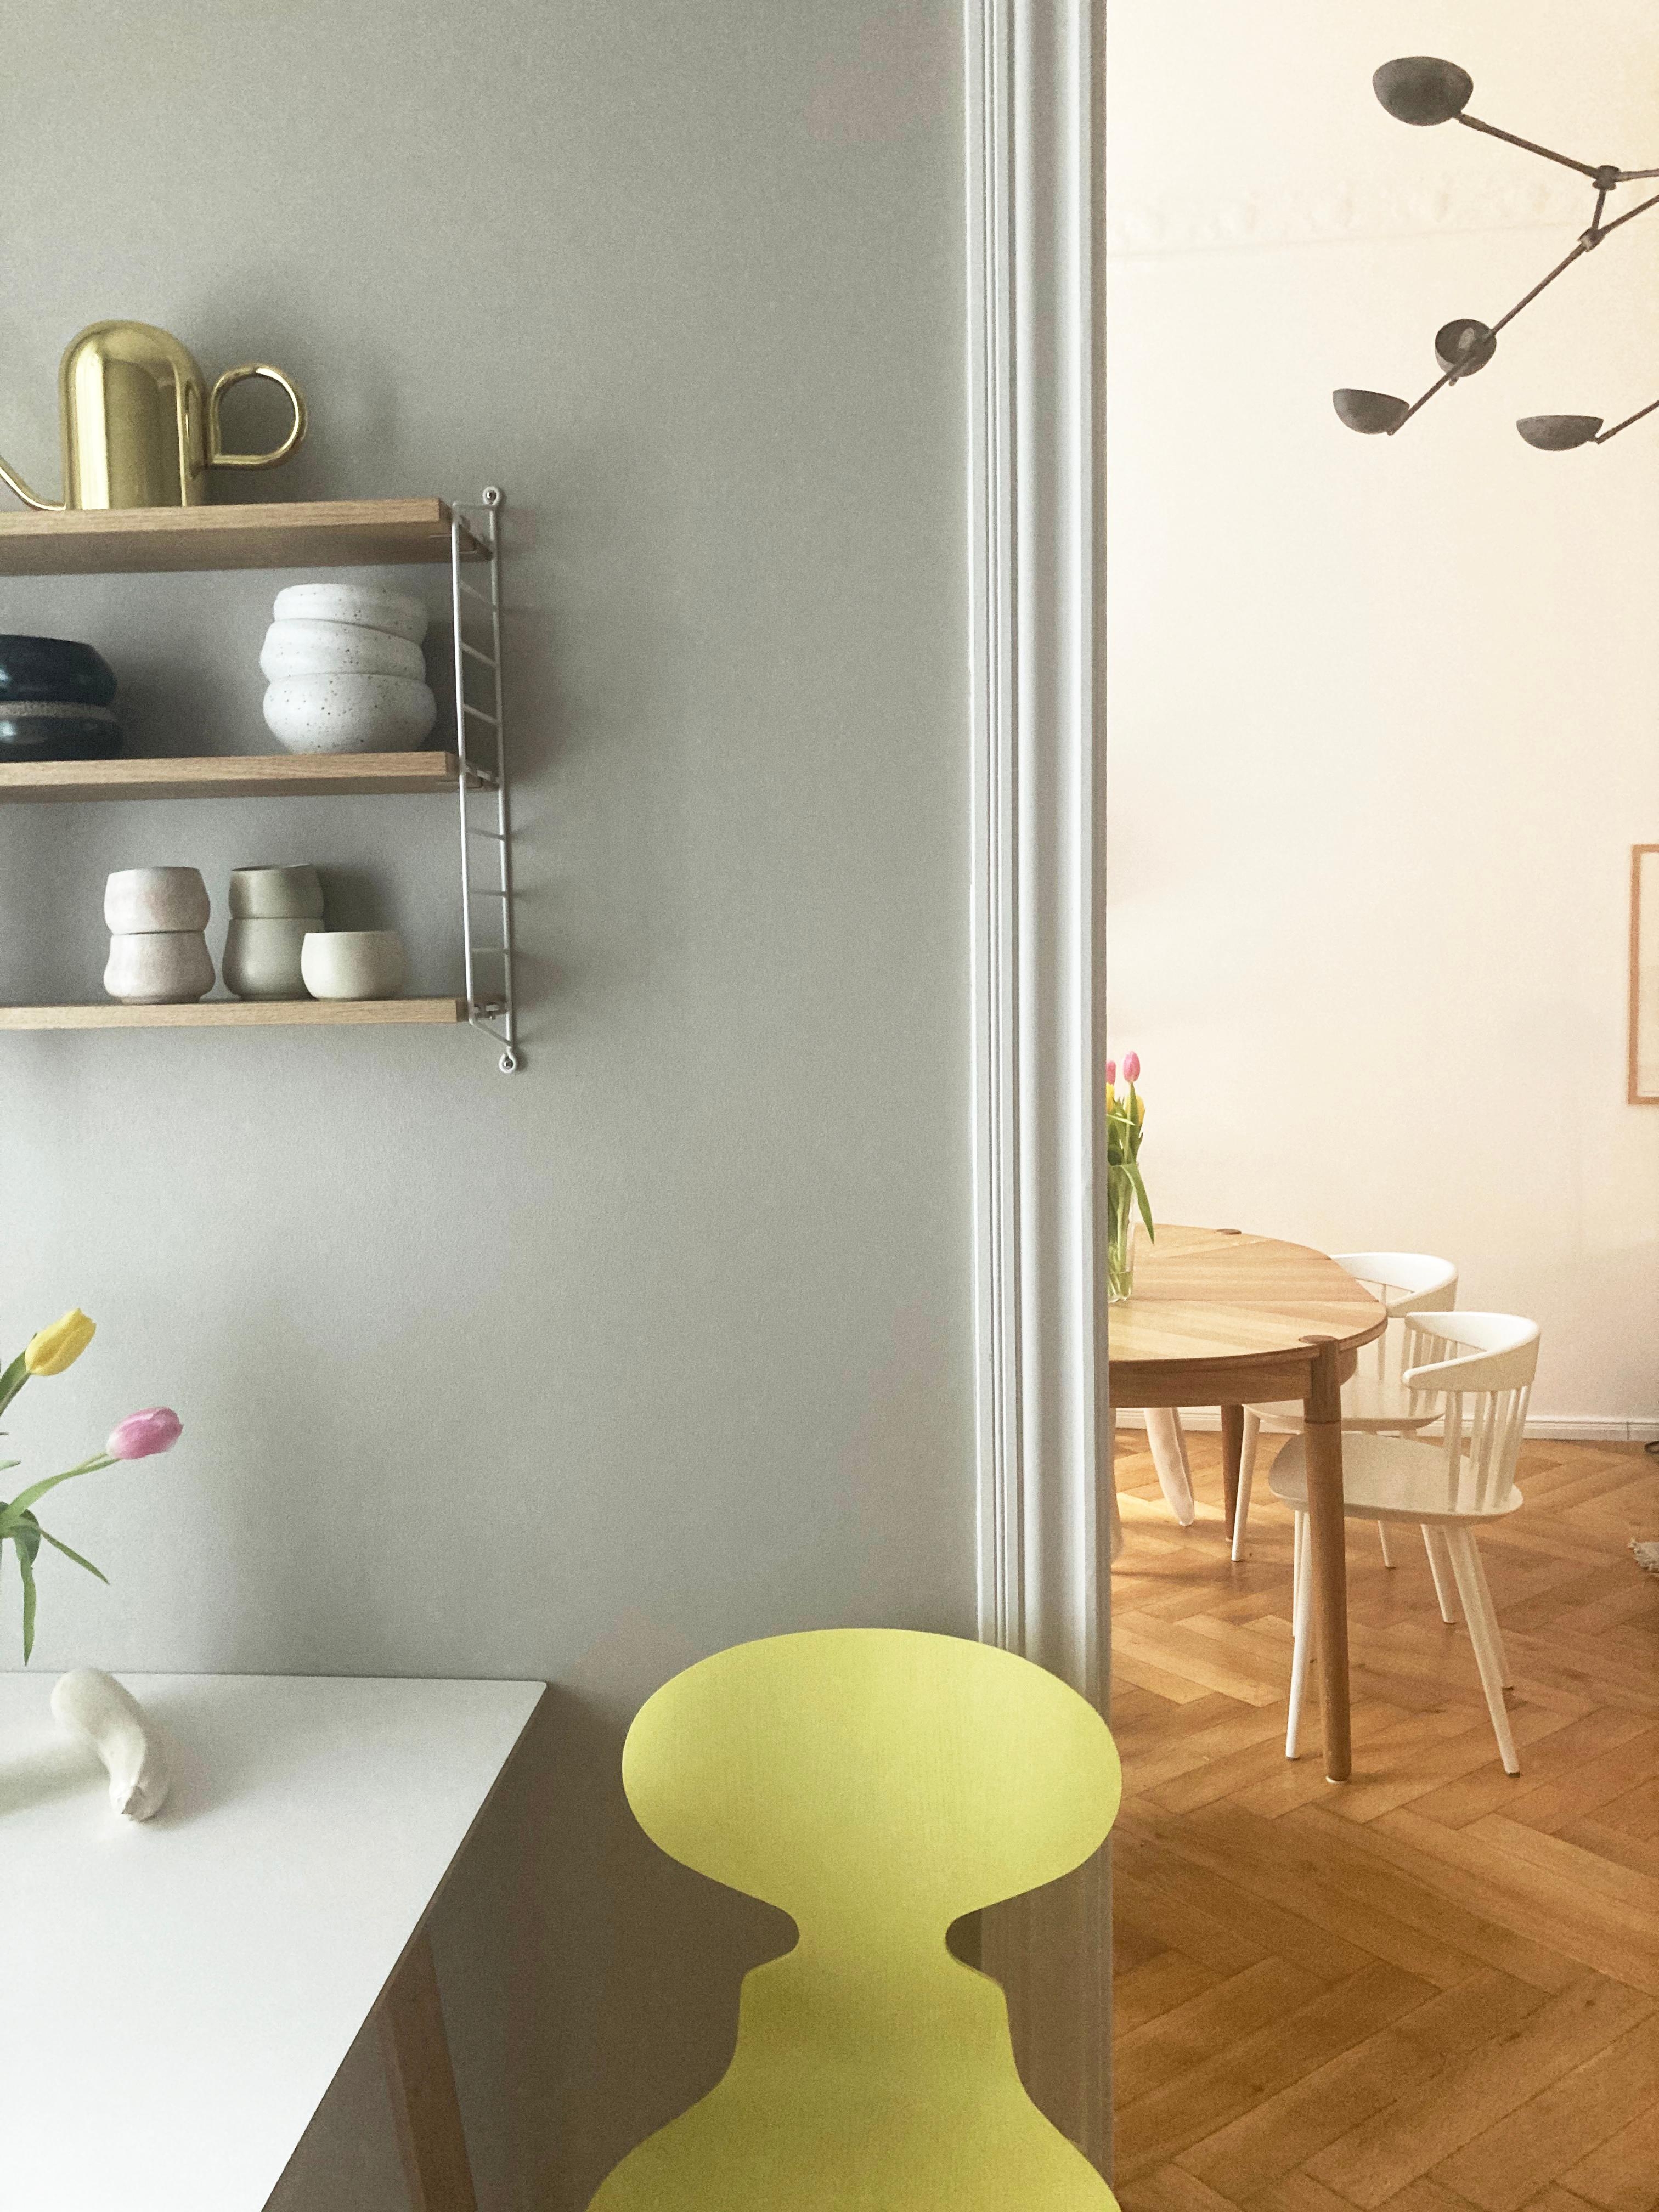 Derzeit mein liebster Platz zum Arbeiten von zuhause #homeoffice #scandinaviandesign #kitchendesign